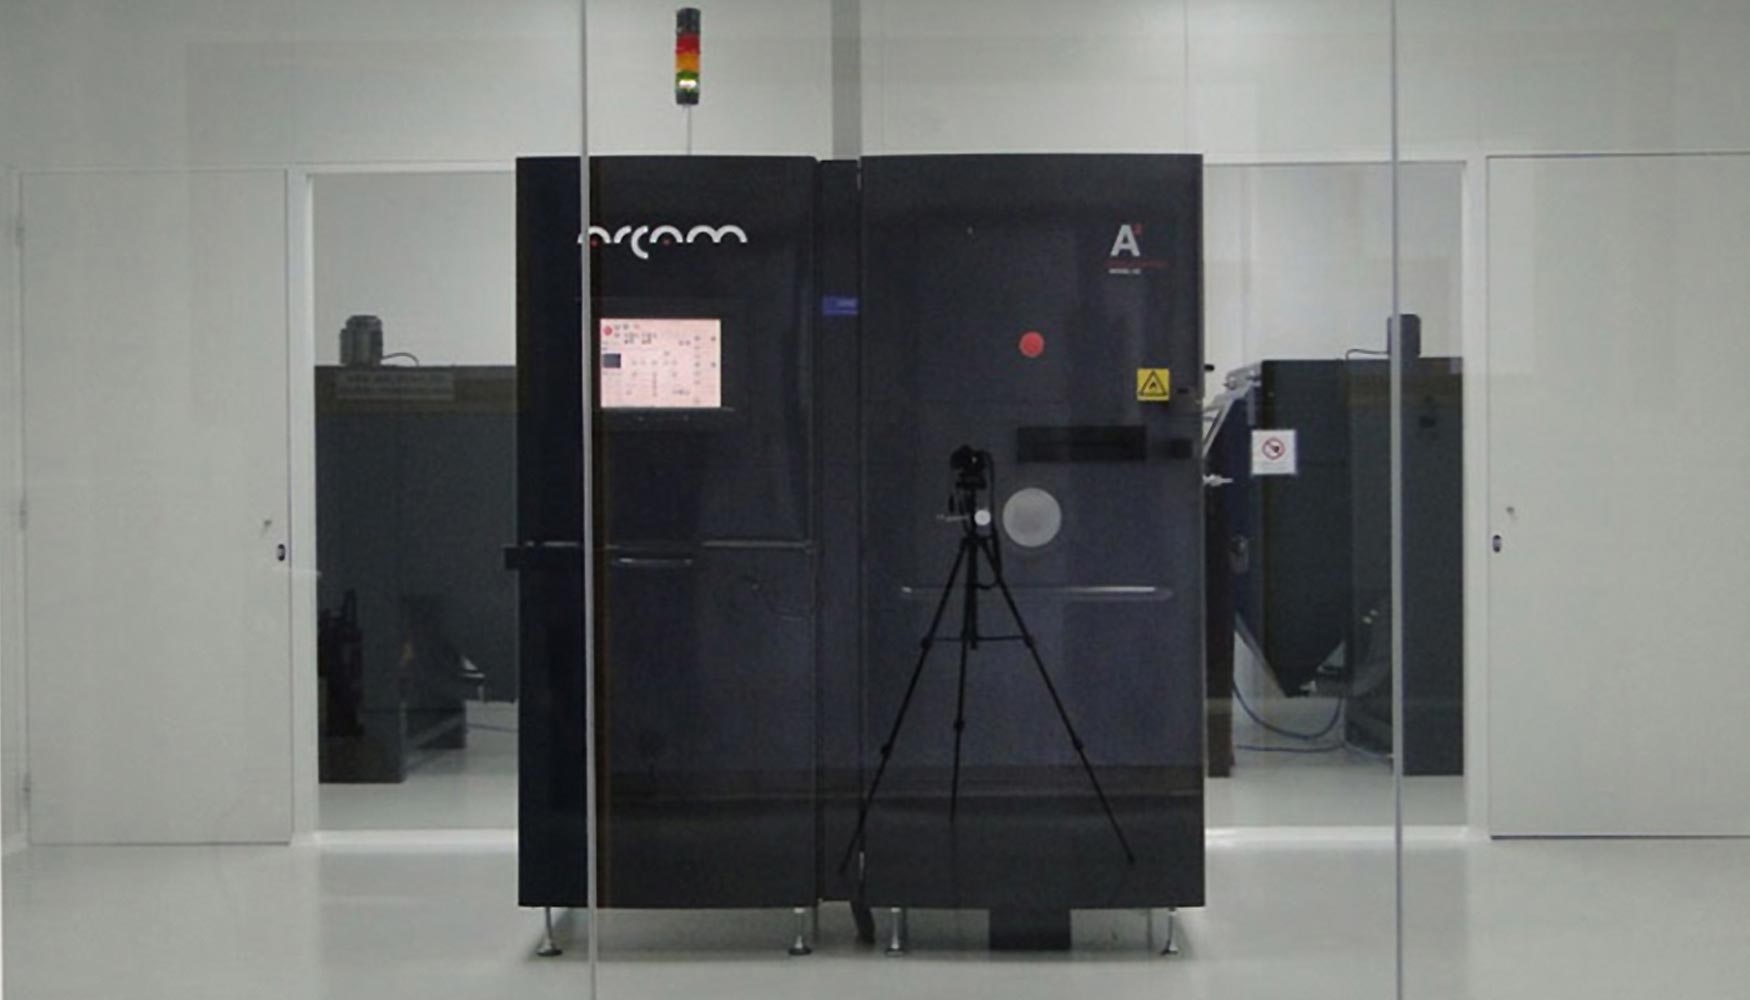 Figura 1. Mquina EBM modelos A2 del fabricante ARCAM AB en las instalaciones de Aidimme